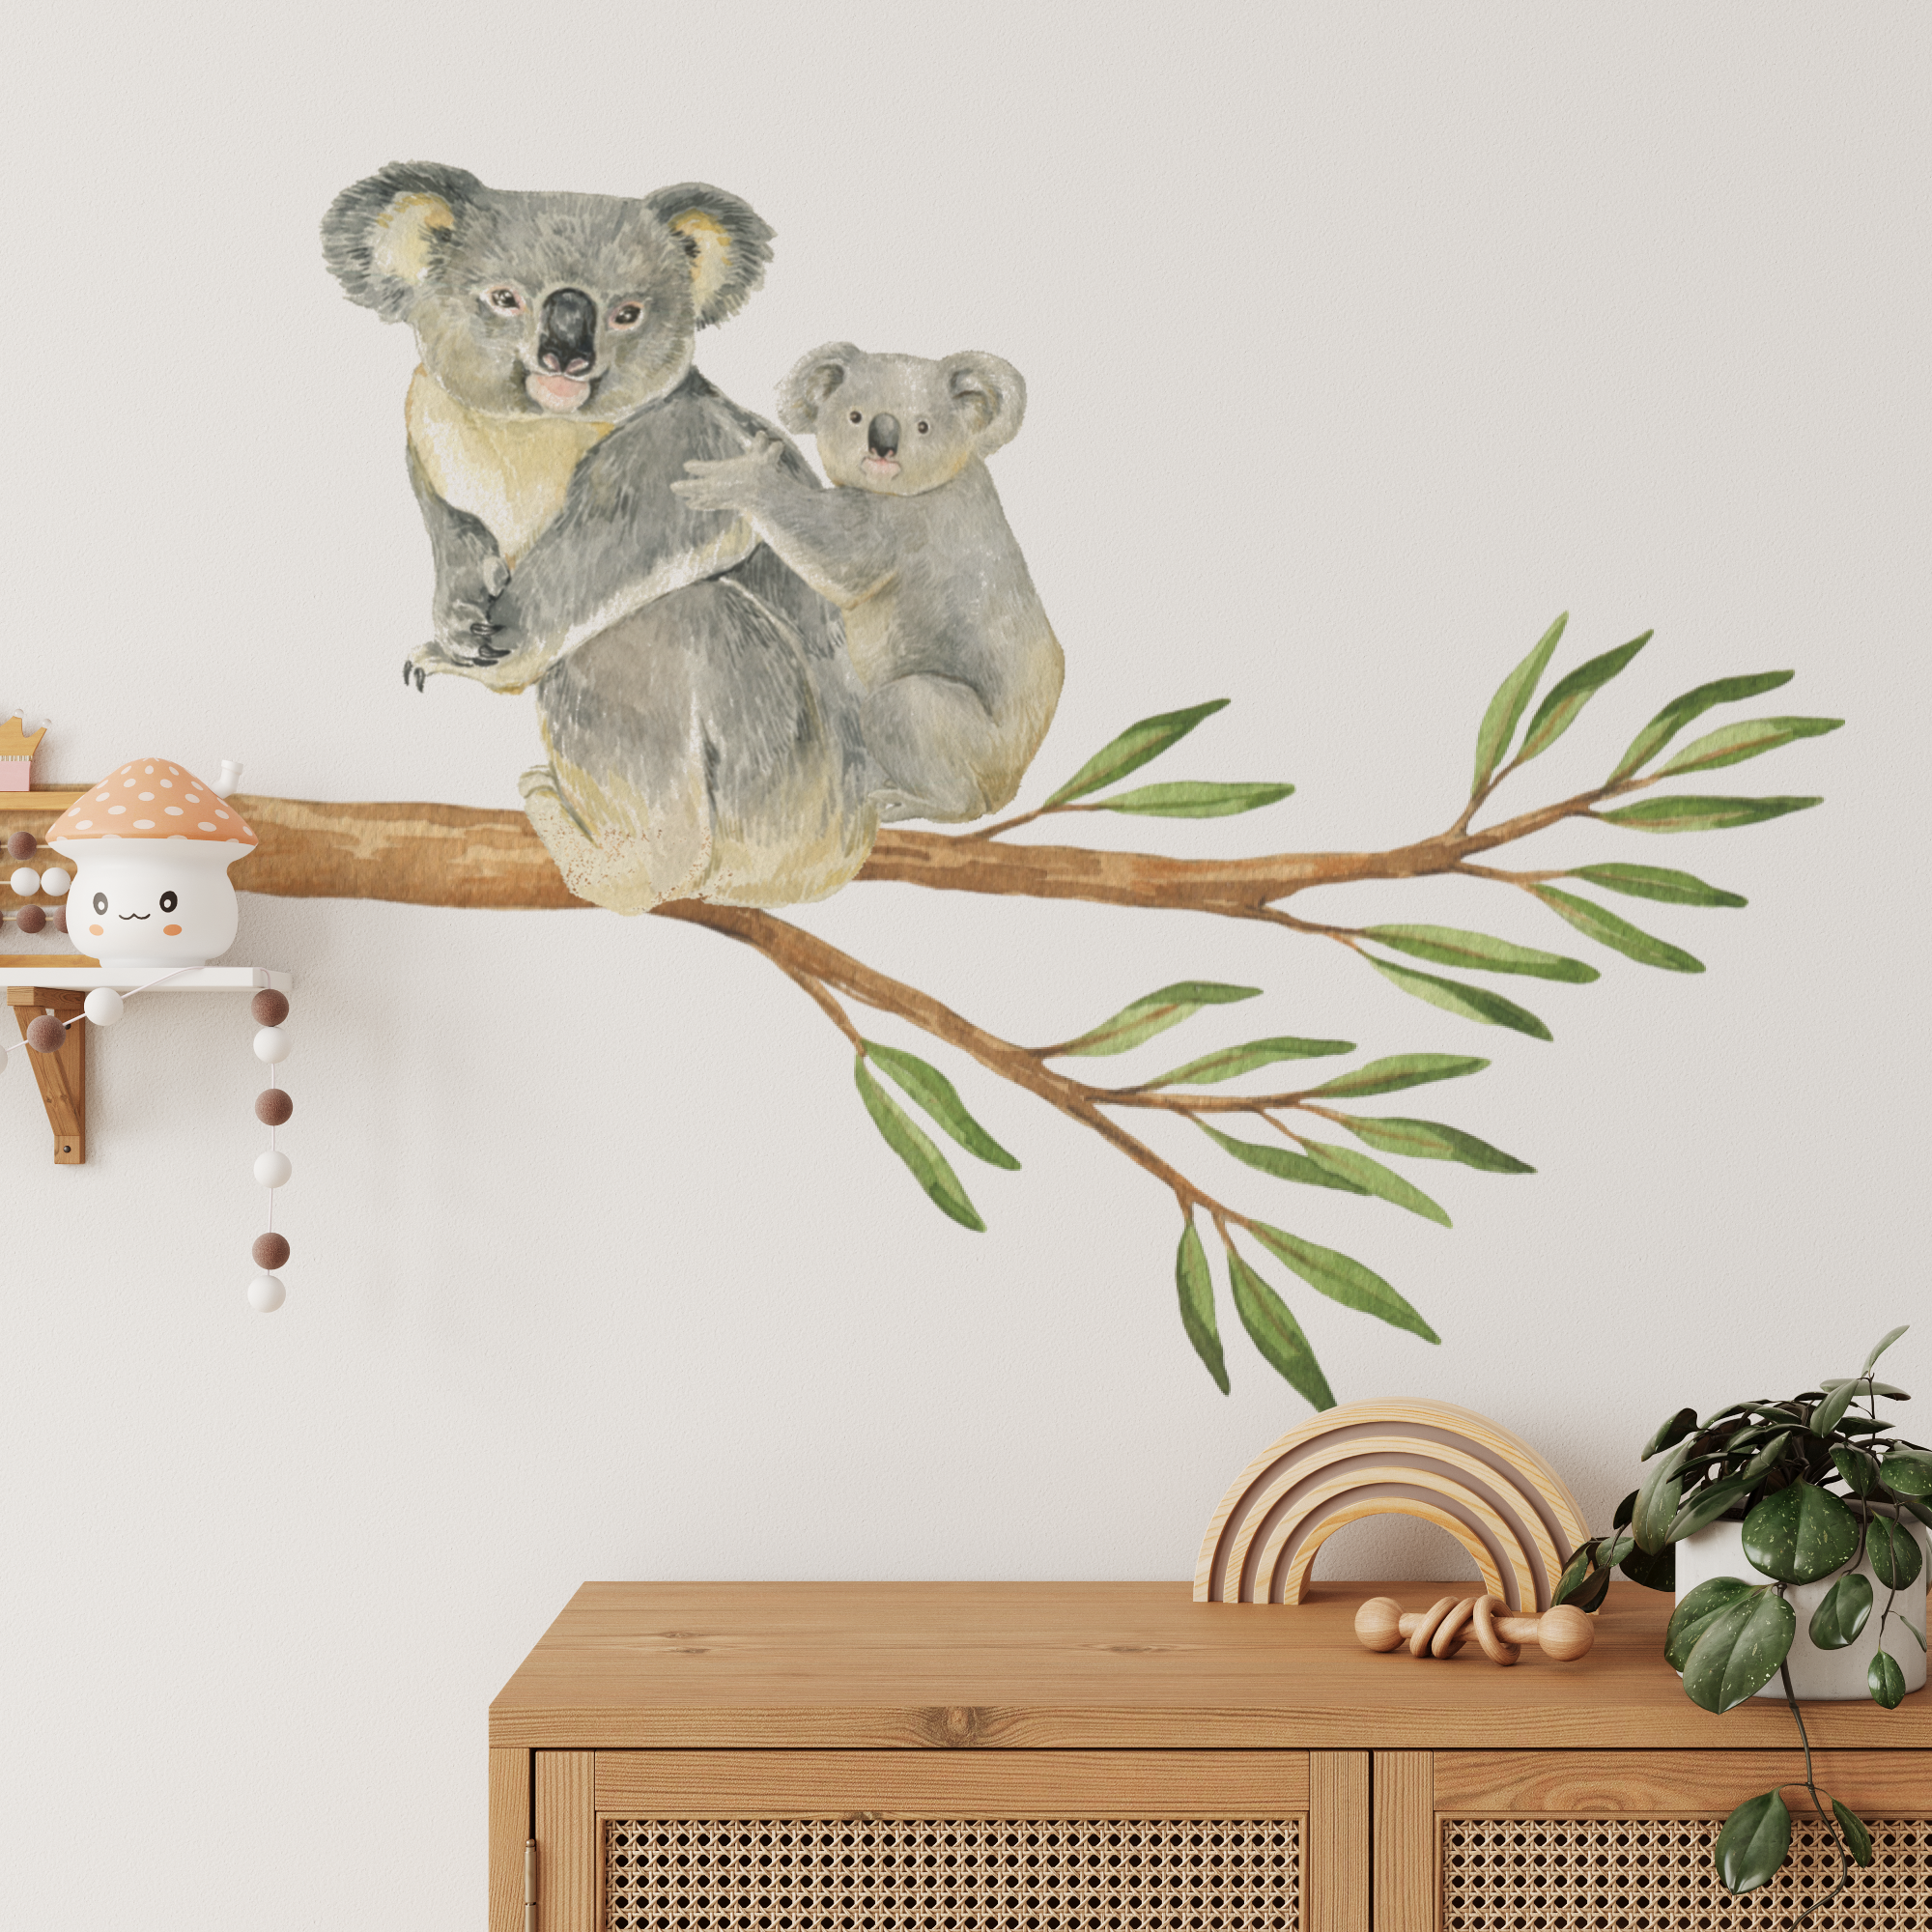 Australian Gum Tree Branch & Koalas Wall Decals